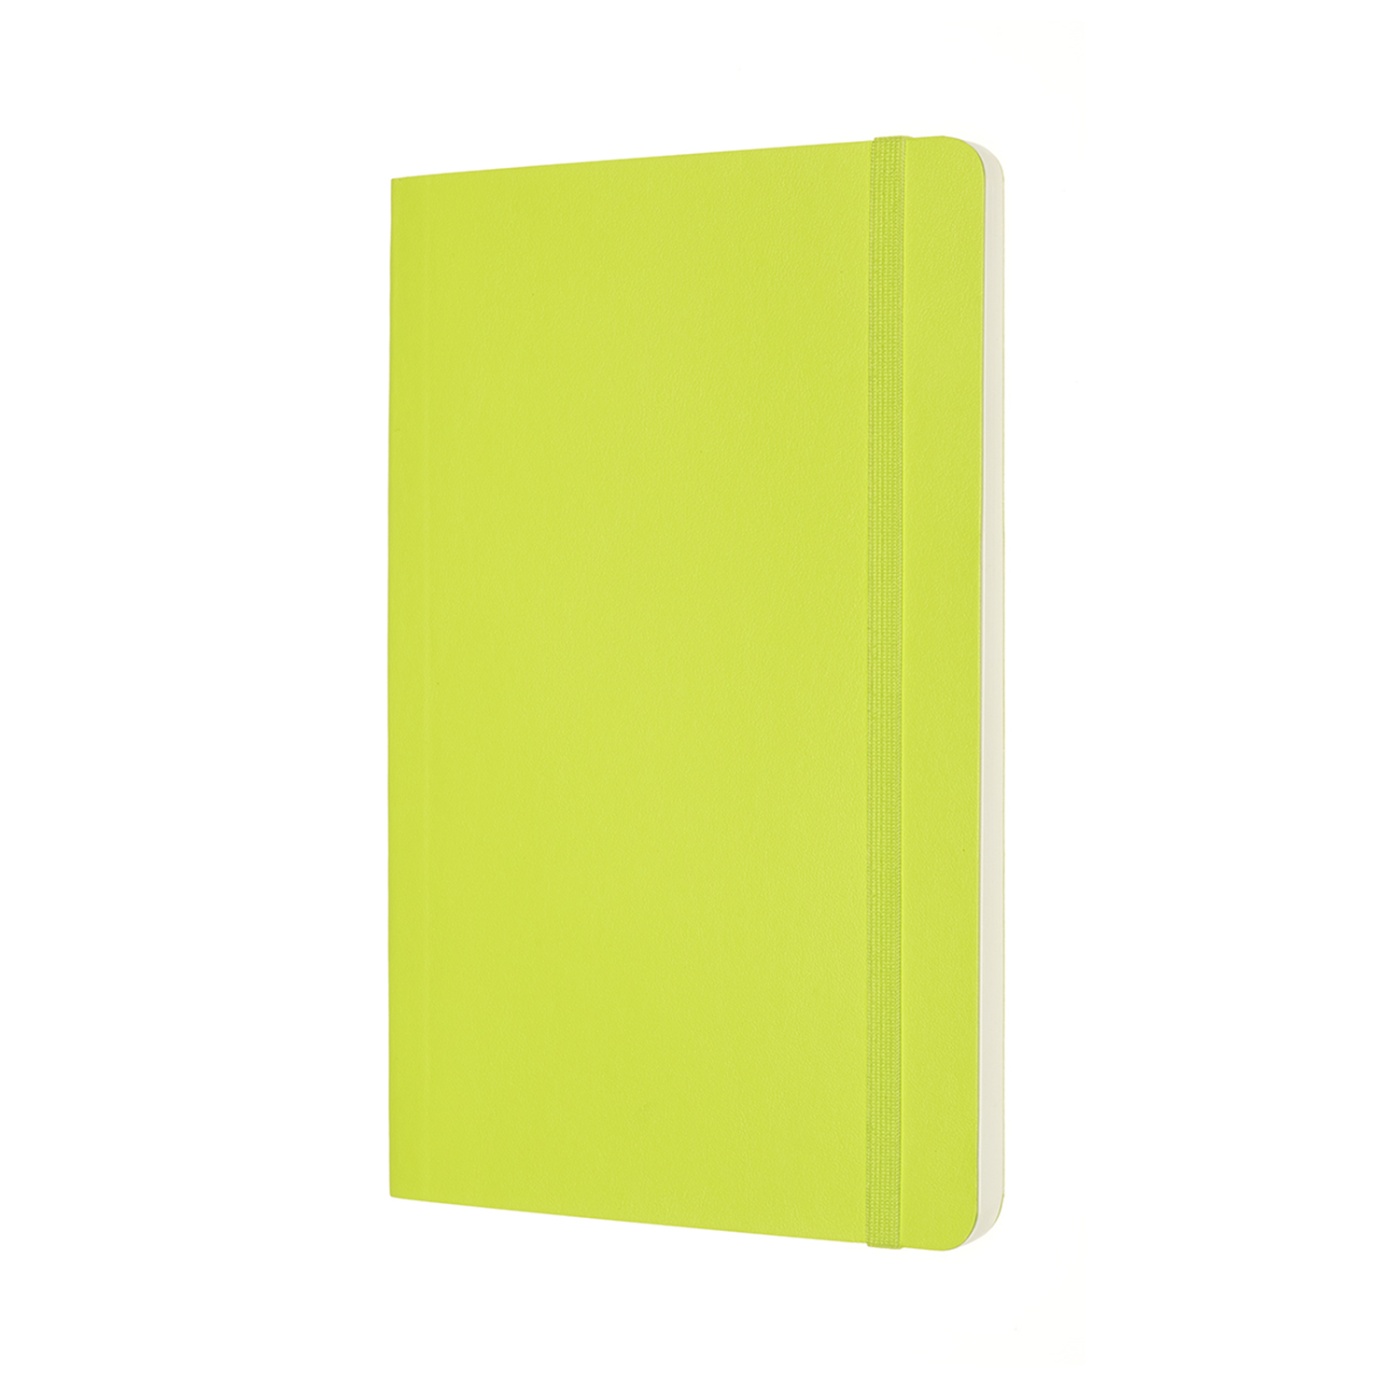 Classic Soft Cover Large Lemon Green dans le groupe Papiers & Blocs / Écrire et consigner / Carnets chez Pen Store (100420_r)